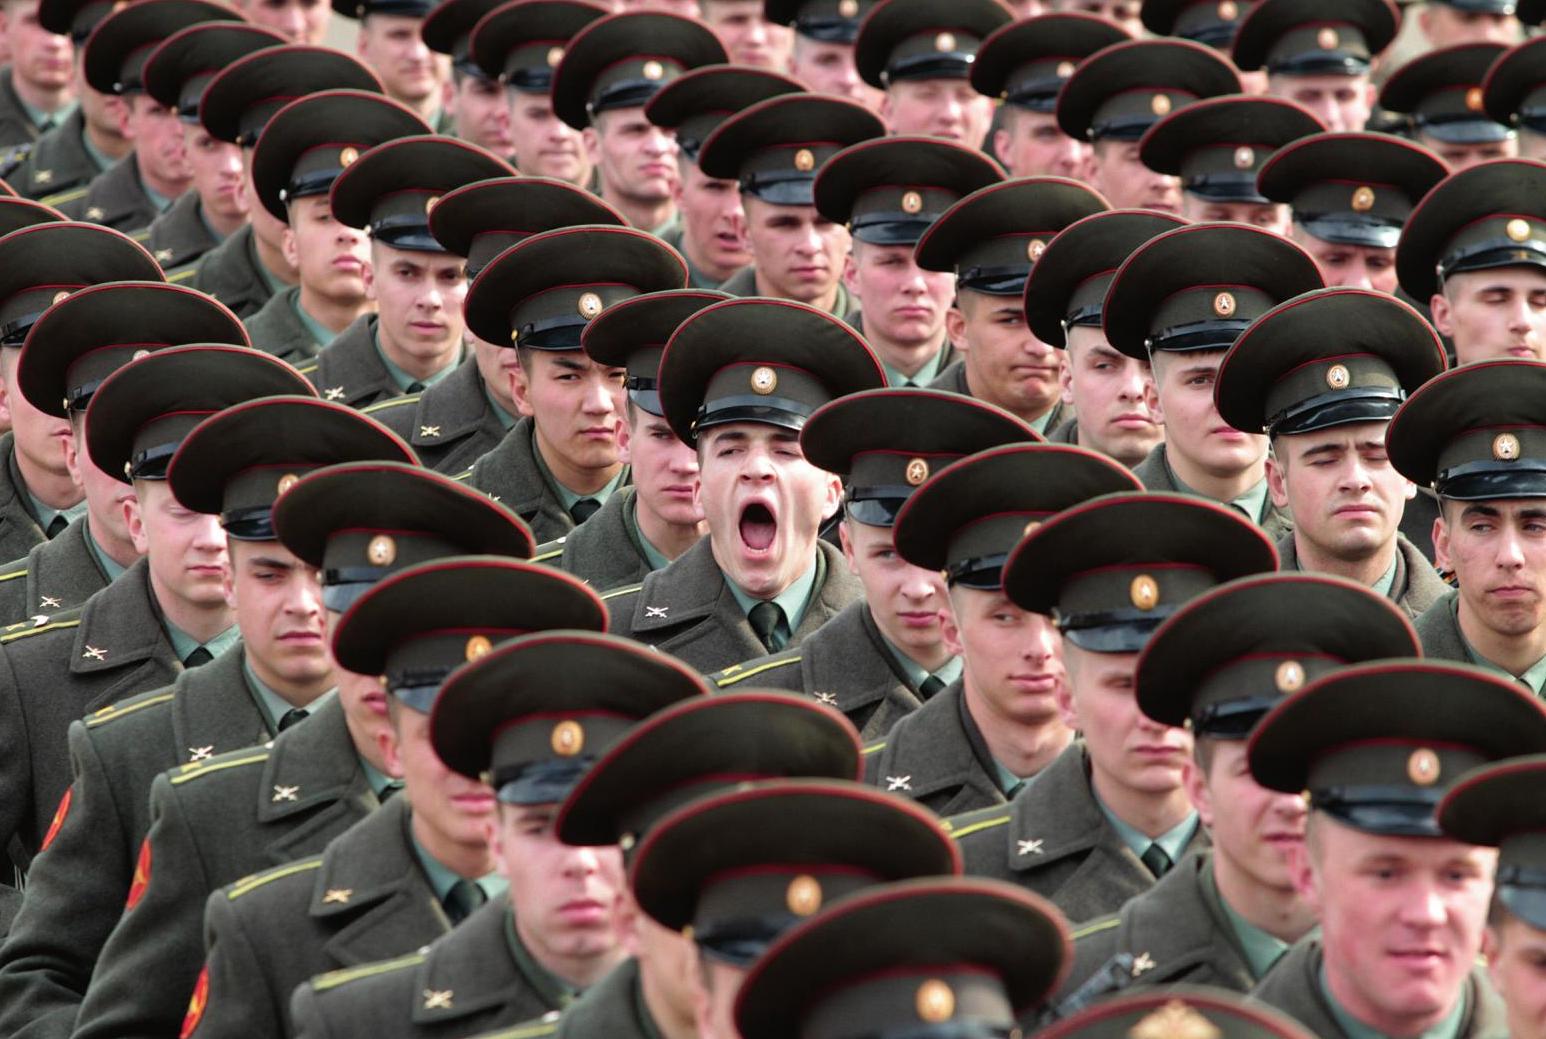 Военный зевает во время официальной церемонии, Россия, 2010-е гг.